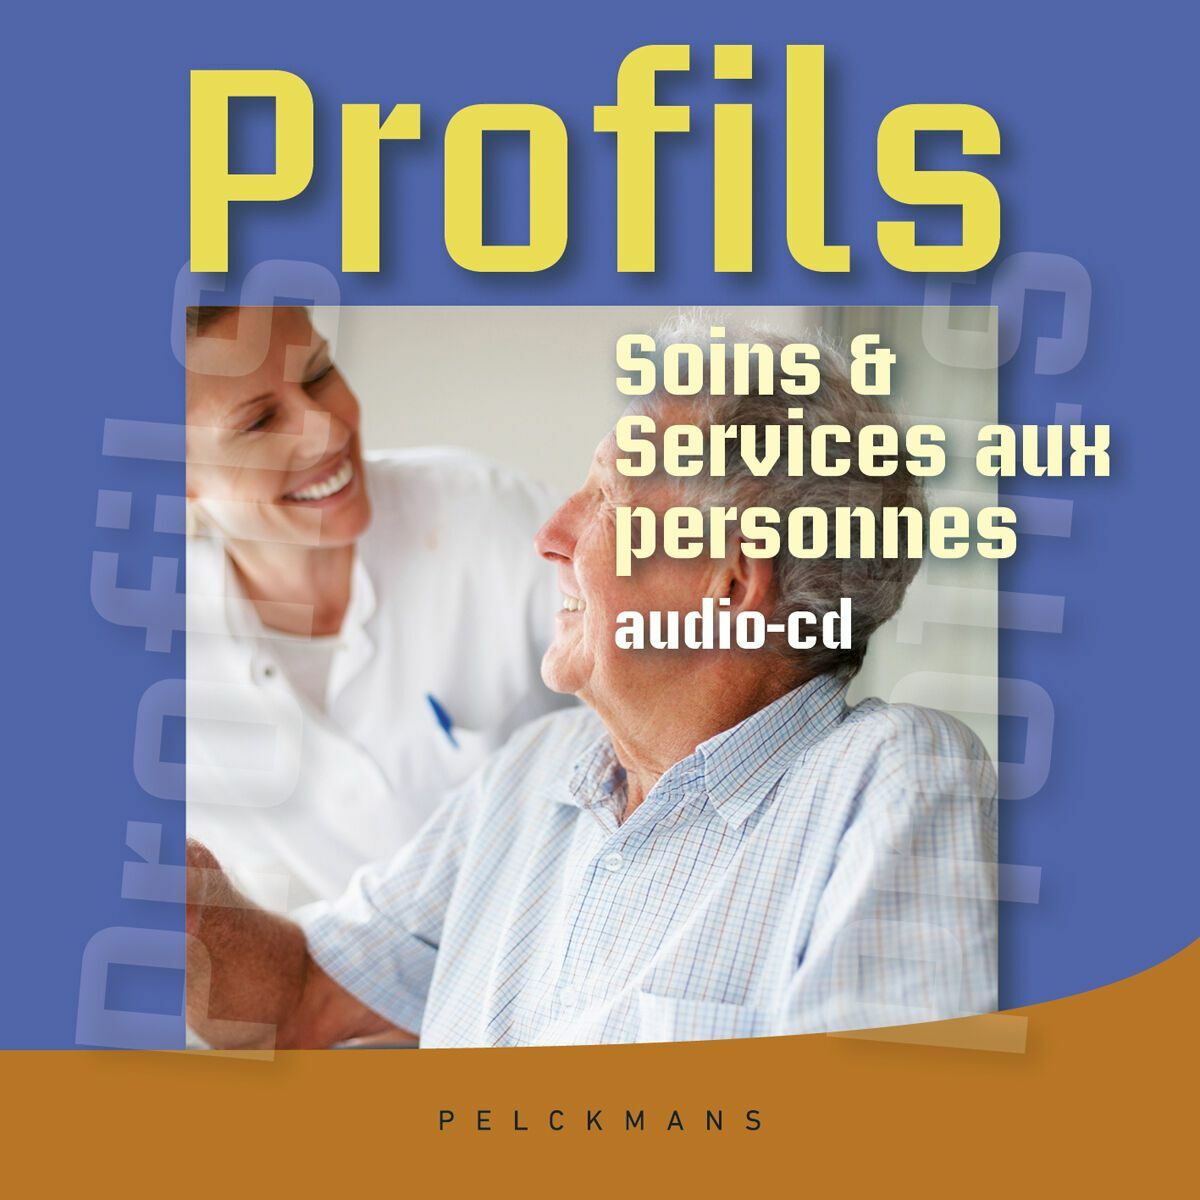 Profils Soins et services aux personnes: Audio-cd